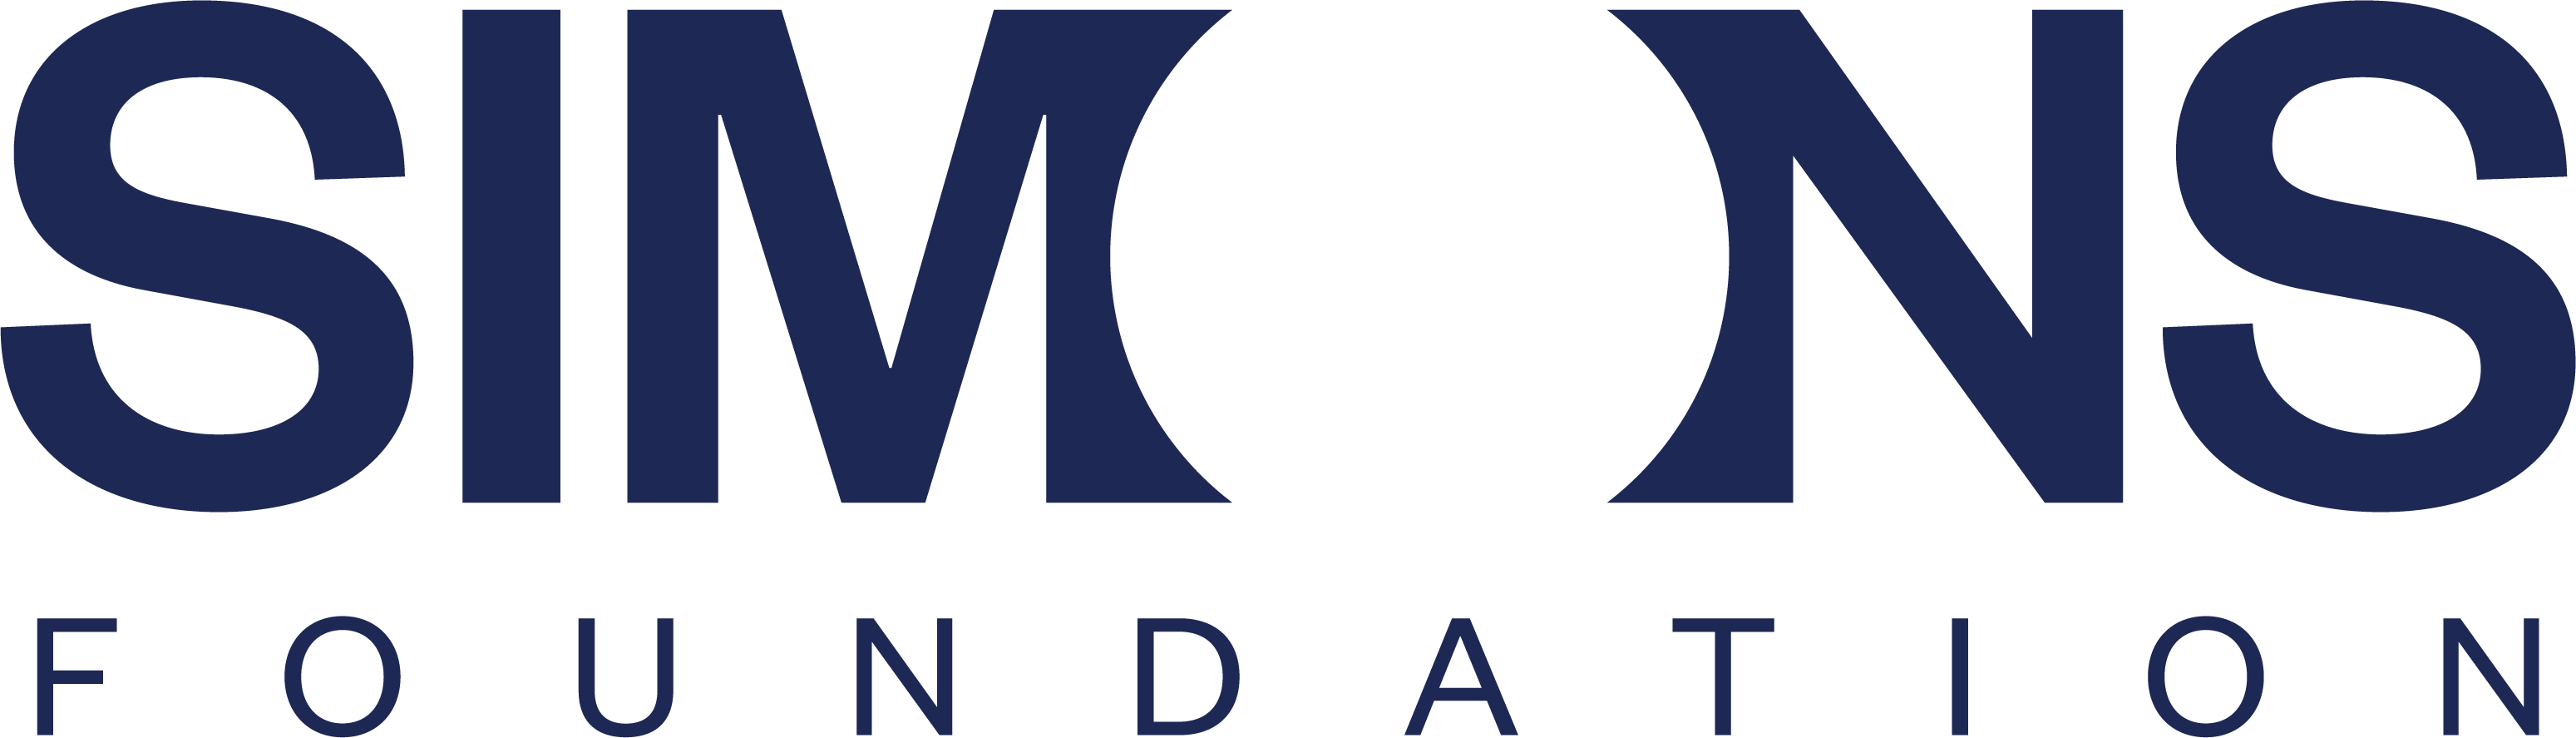 Simons Foundation logo blue